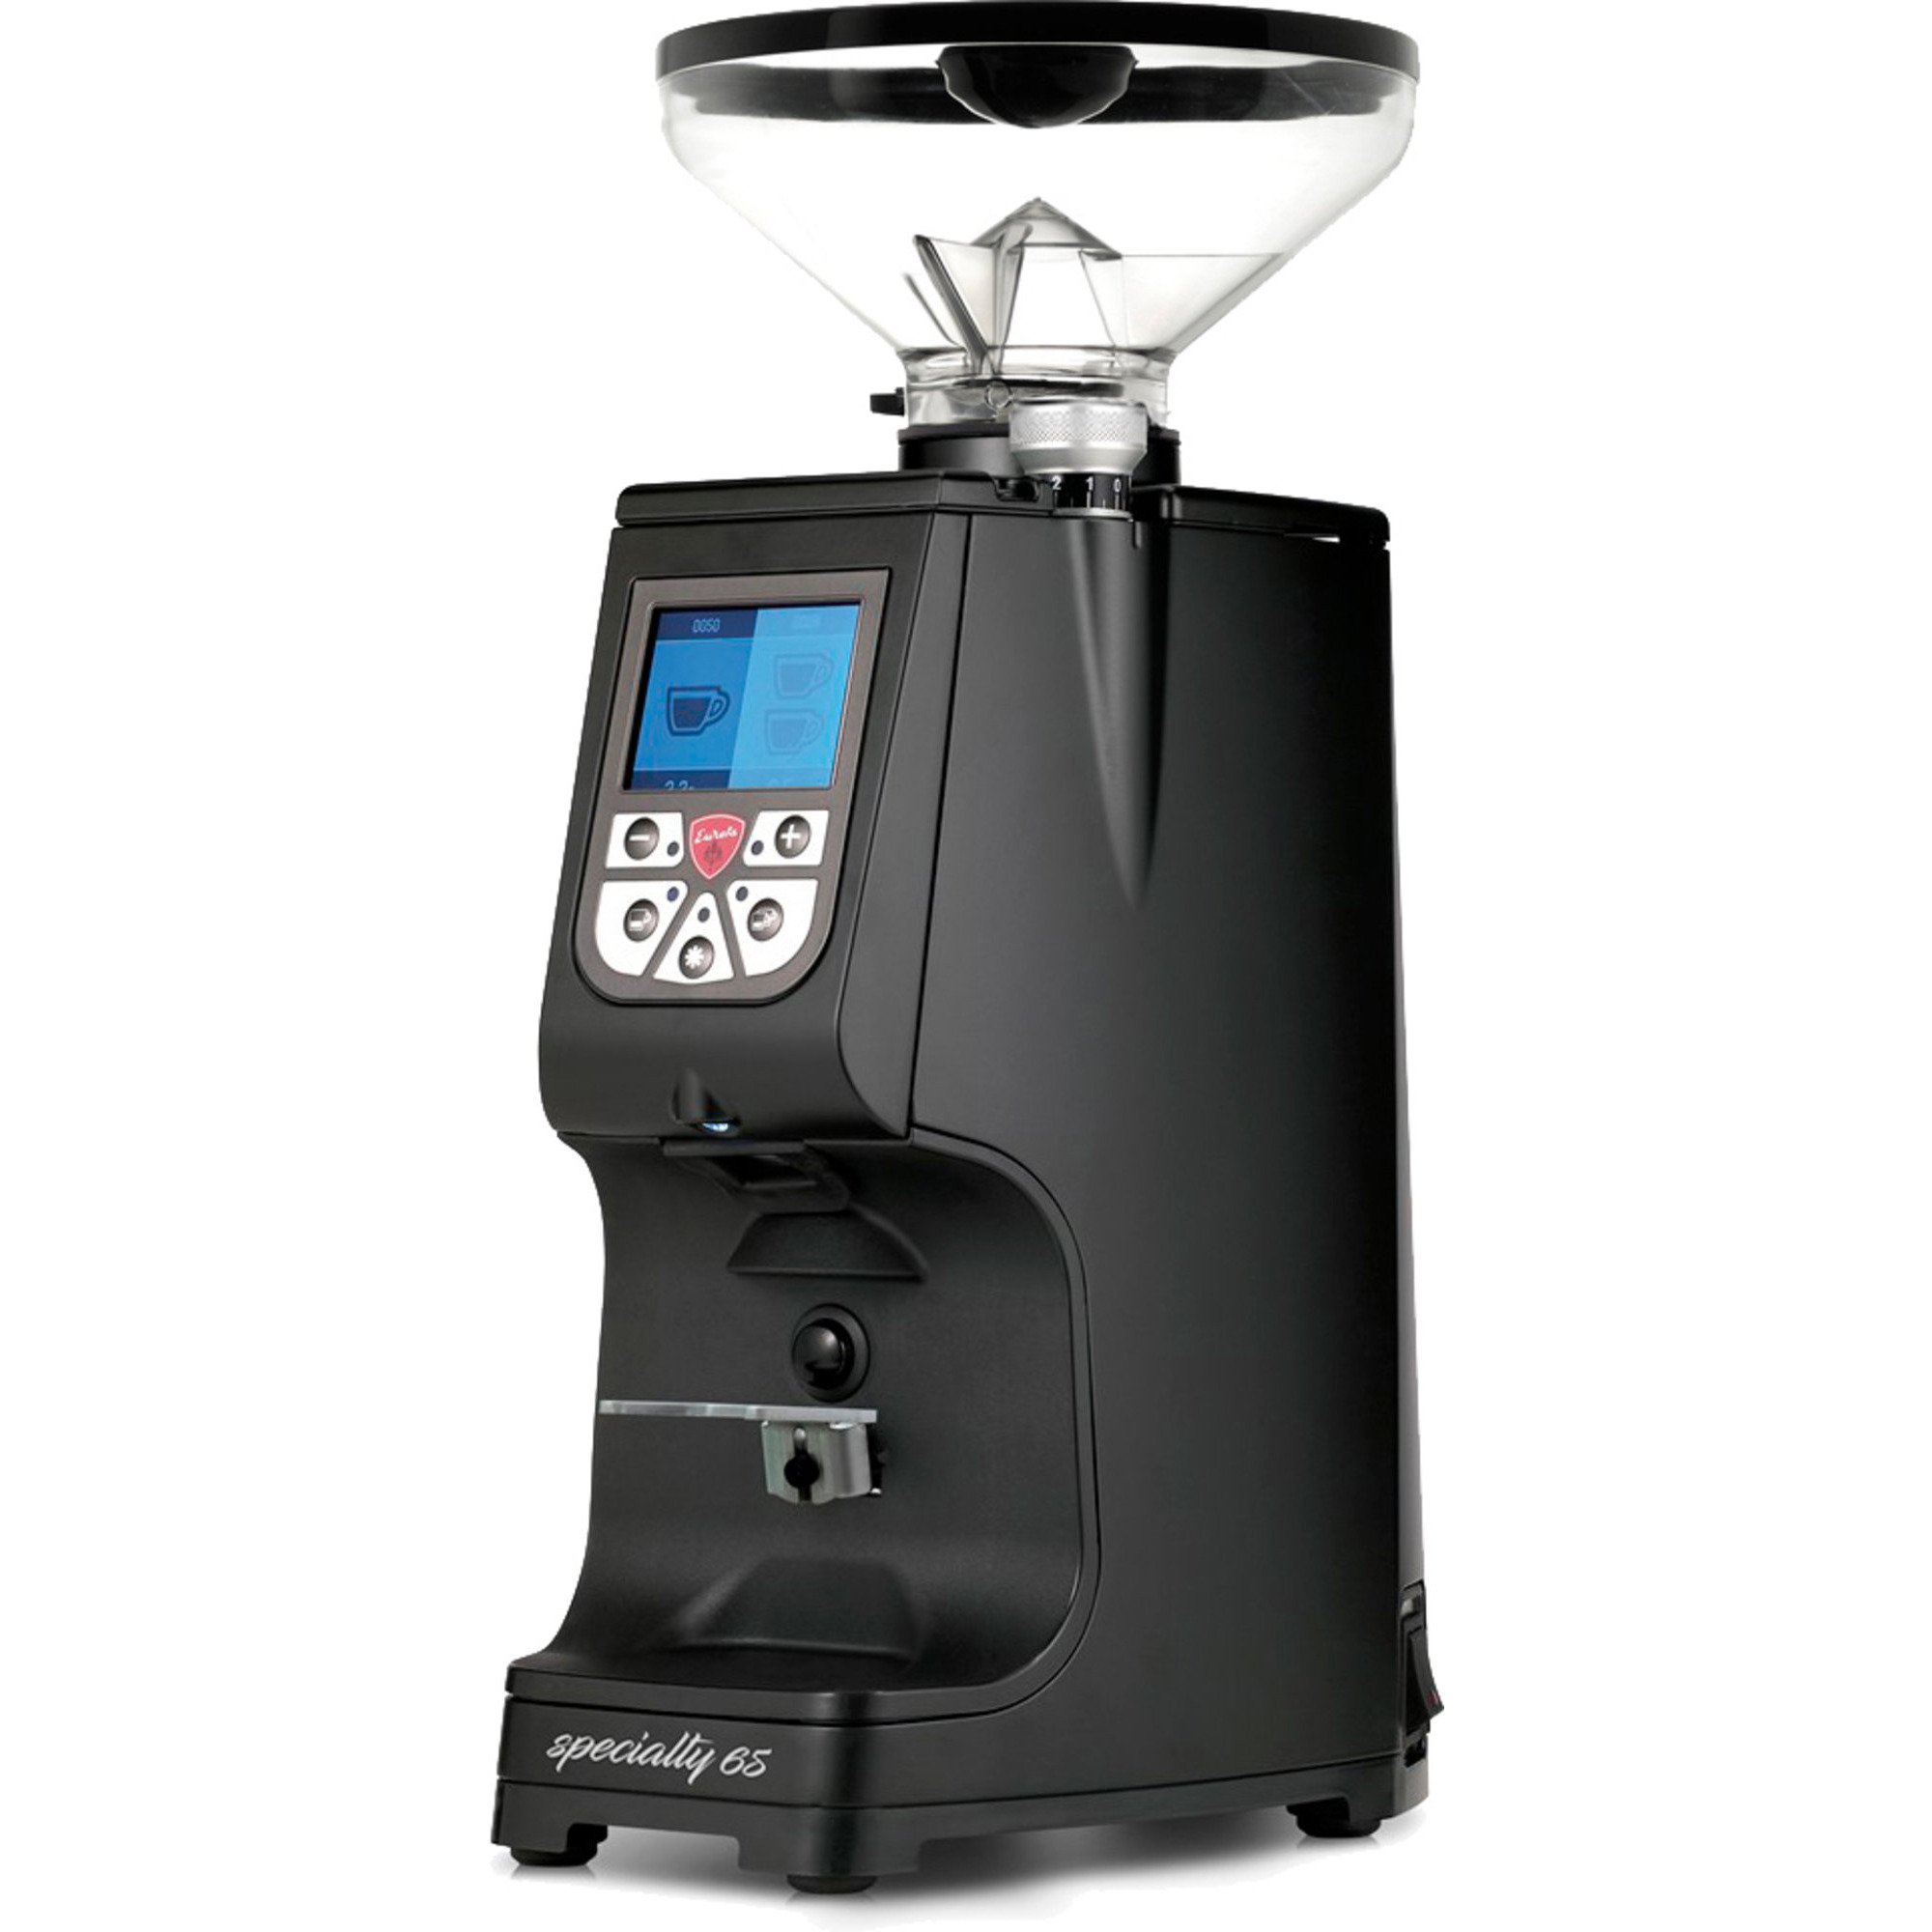 Läs mer om Eureka ATOM Specialty 65 elektronisk kaffekvarn